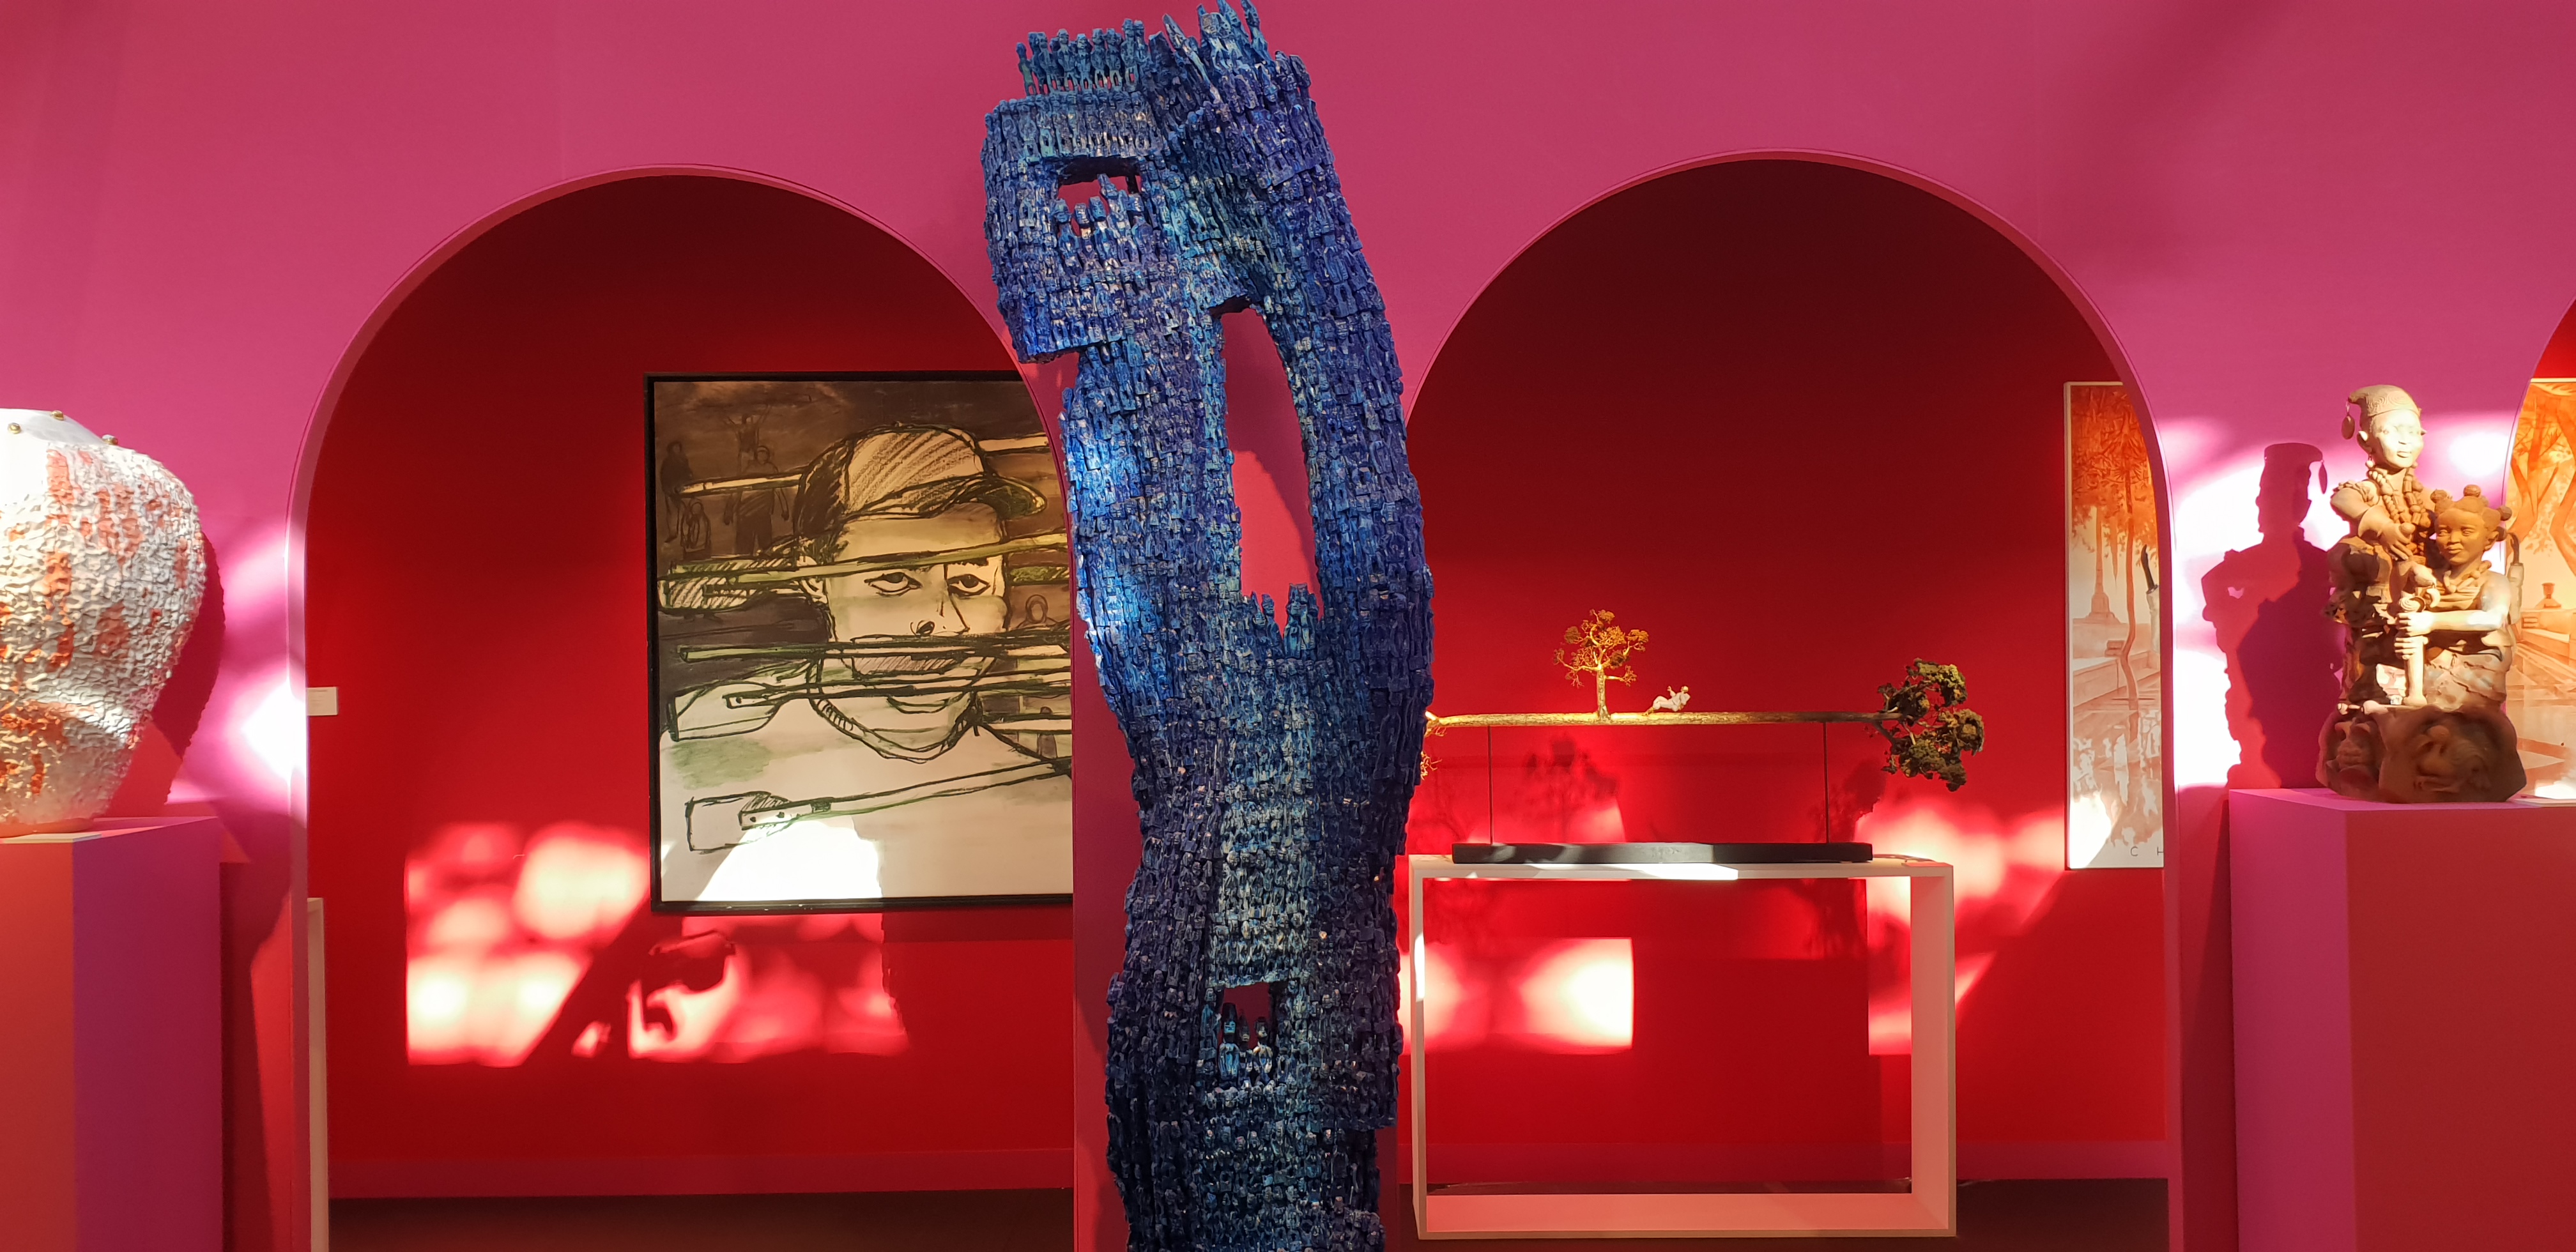 Oeuvres des artistes Dominique Zinkpè- Jorge Luis Miranda Carracedo sur le tand de la Galerie Vallois --KCHO- AKAA 2018 - ©No Fake In my News